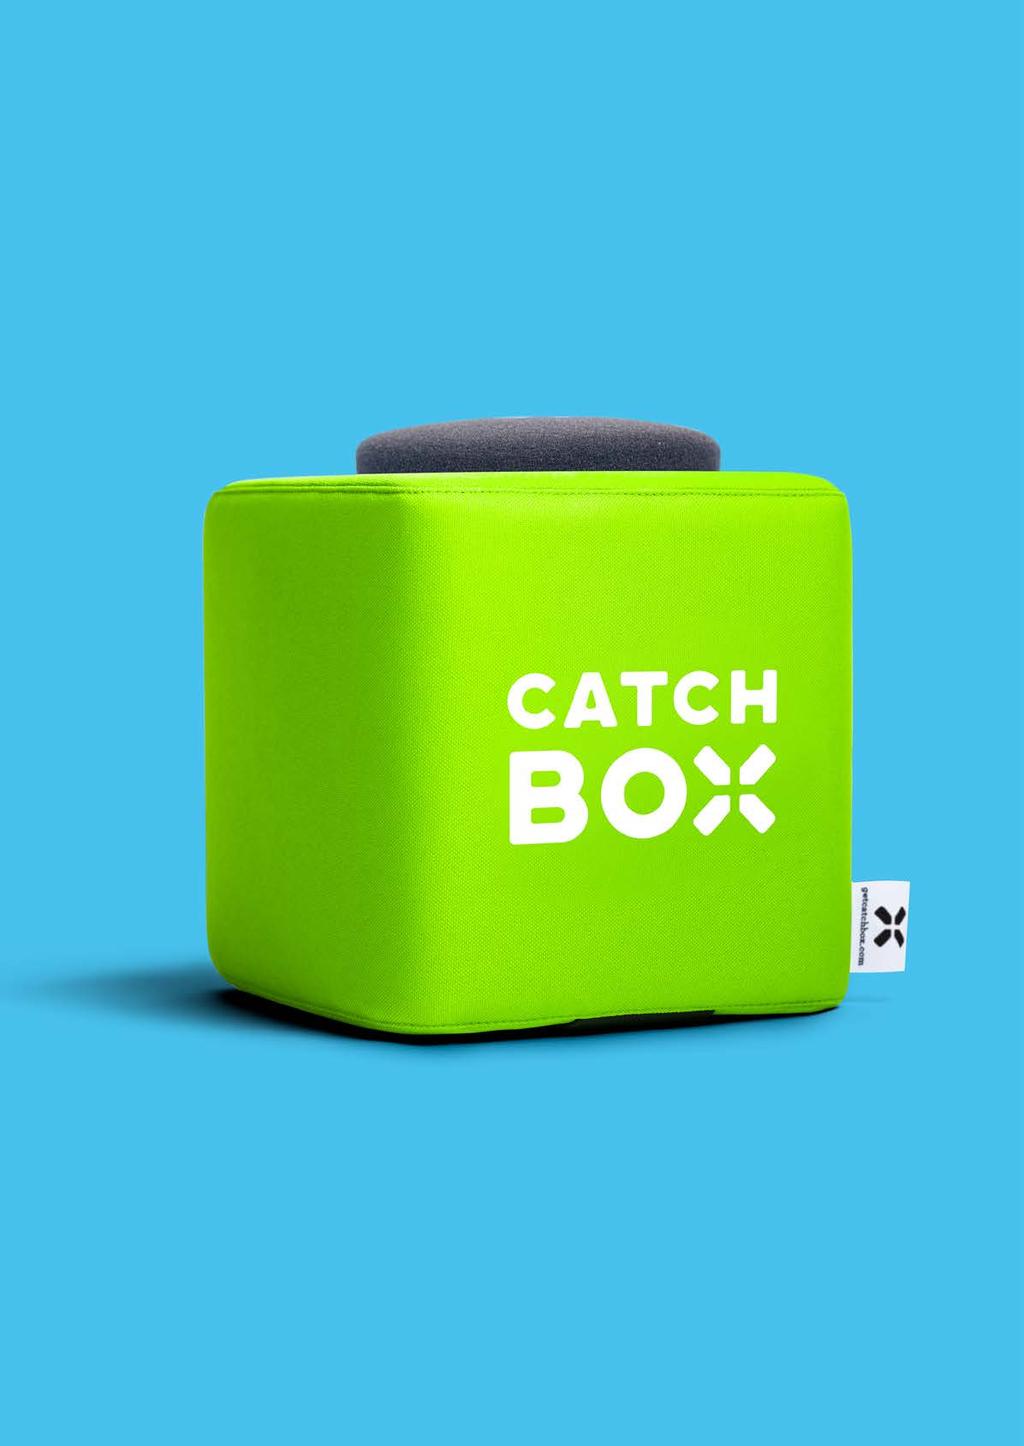 Betrek het publiek met een microfoon die gegooid kan worden De CatchBox is de eerste zachte, draadloze microfoon ter wereld die je in een publiek kunt gooien om er mensen mee aan het